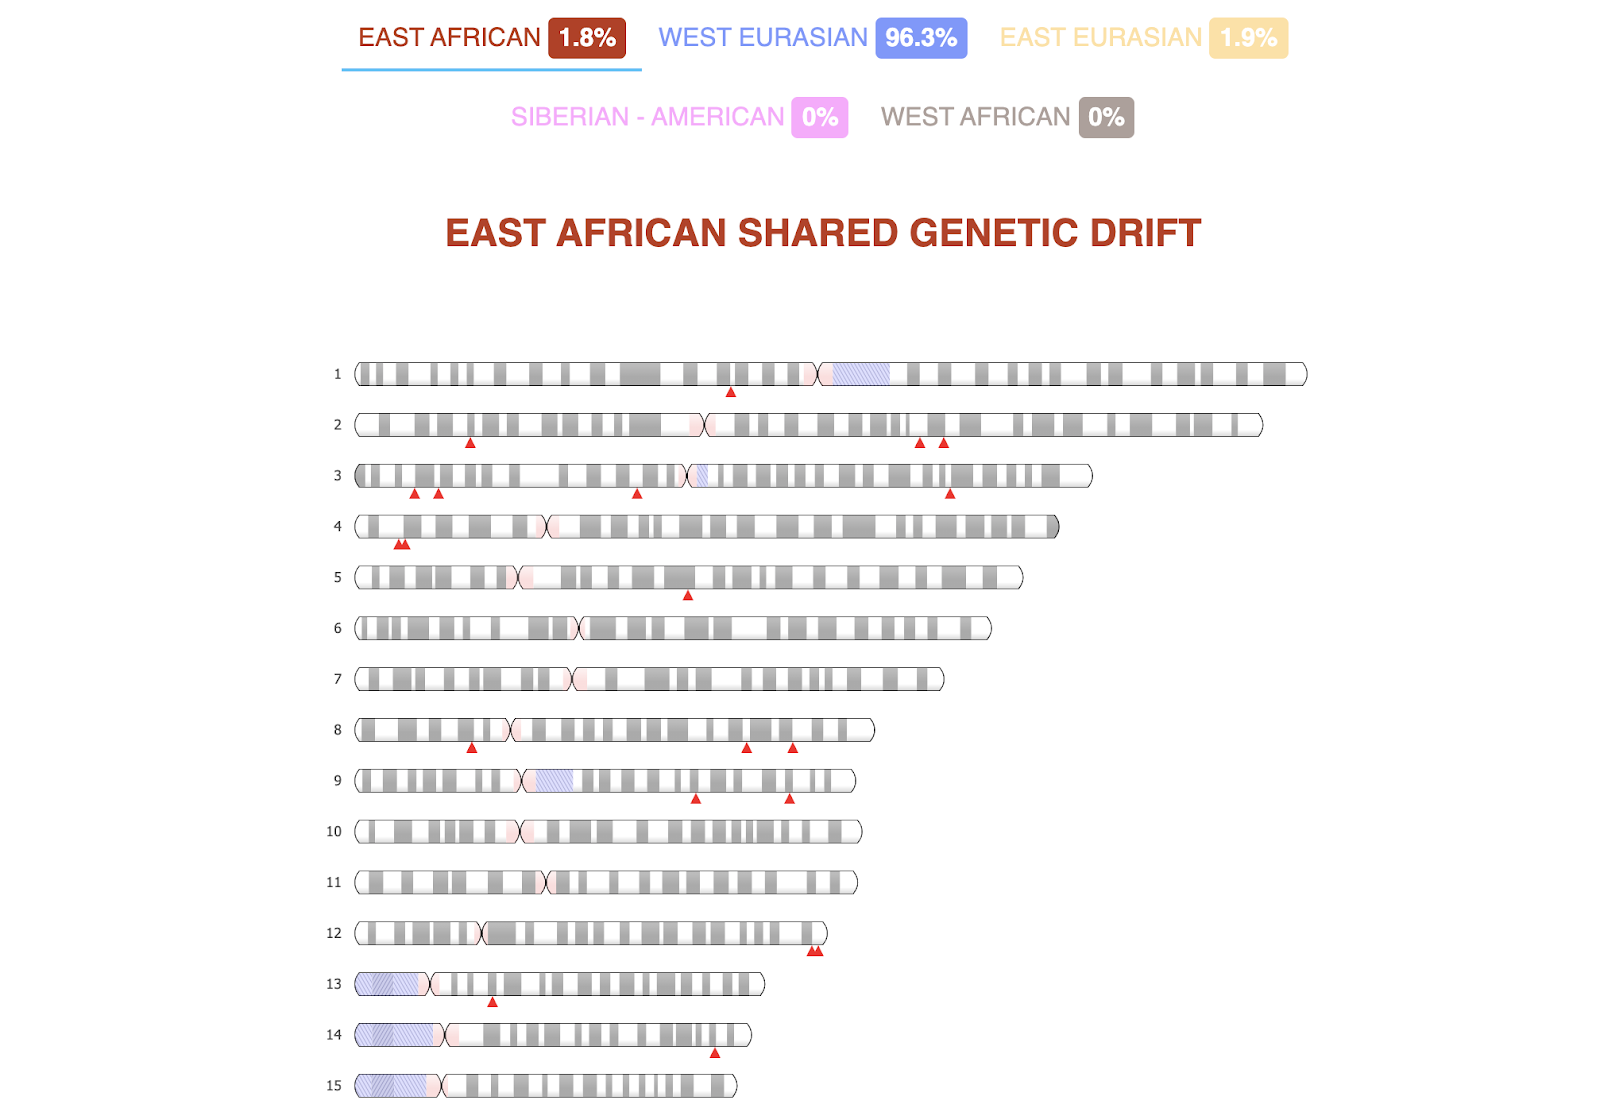 Darstellung von 15 Chromosomen, eingefärbt entsprechend der afrikanischen Abstammung und ein Schlüssel oben auf dem Bildschirmfoto von GenePlaza